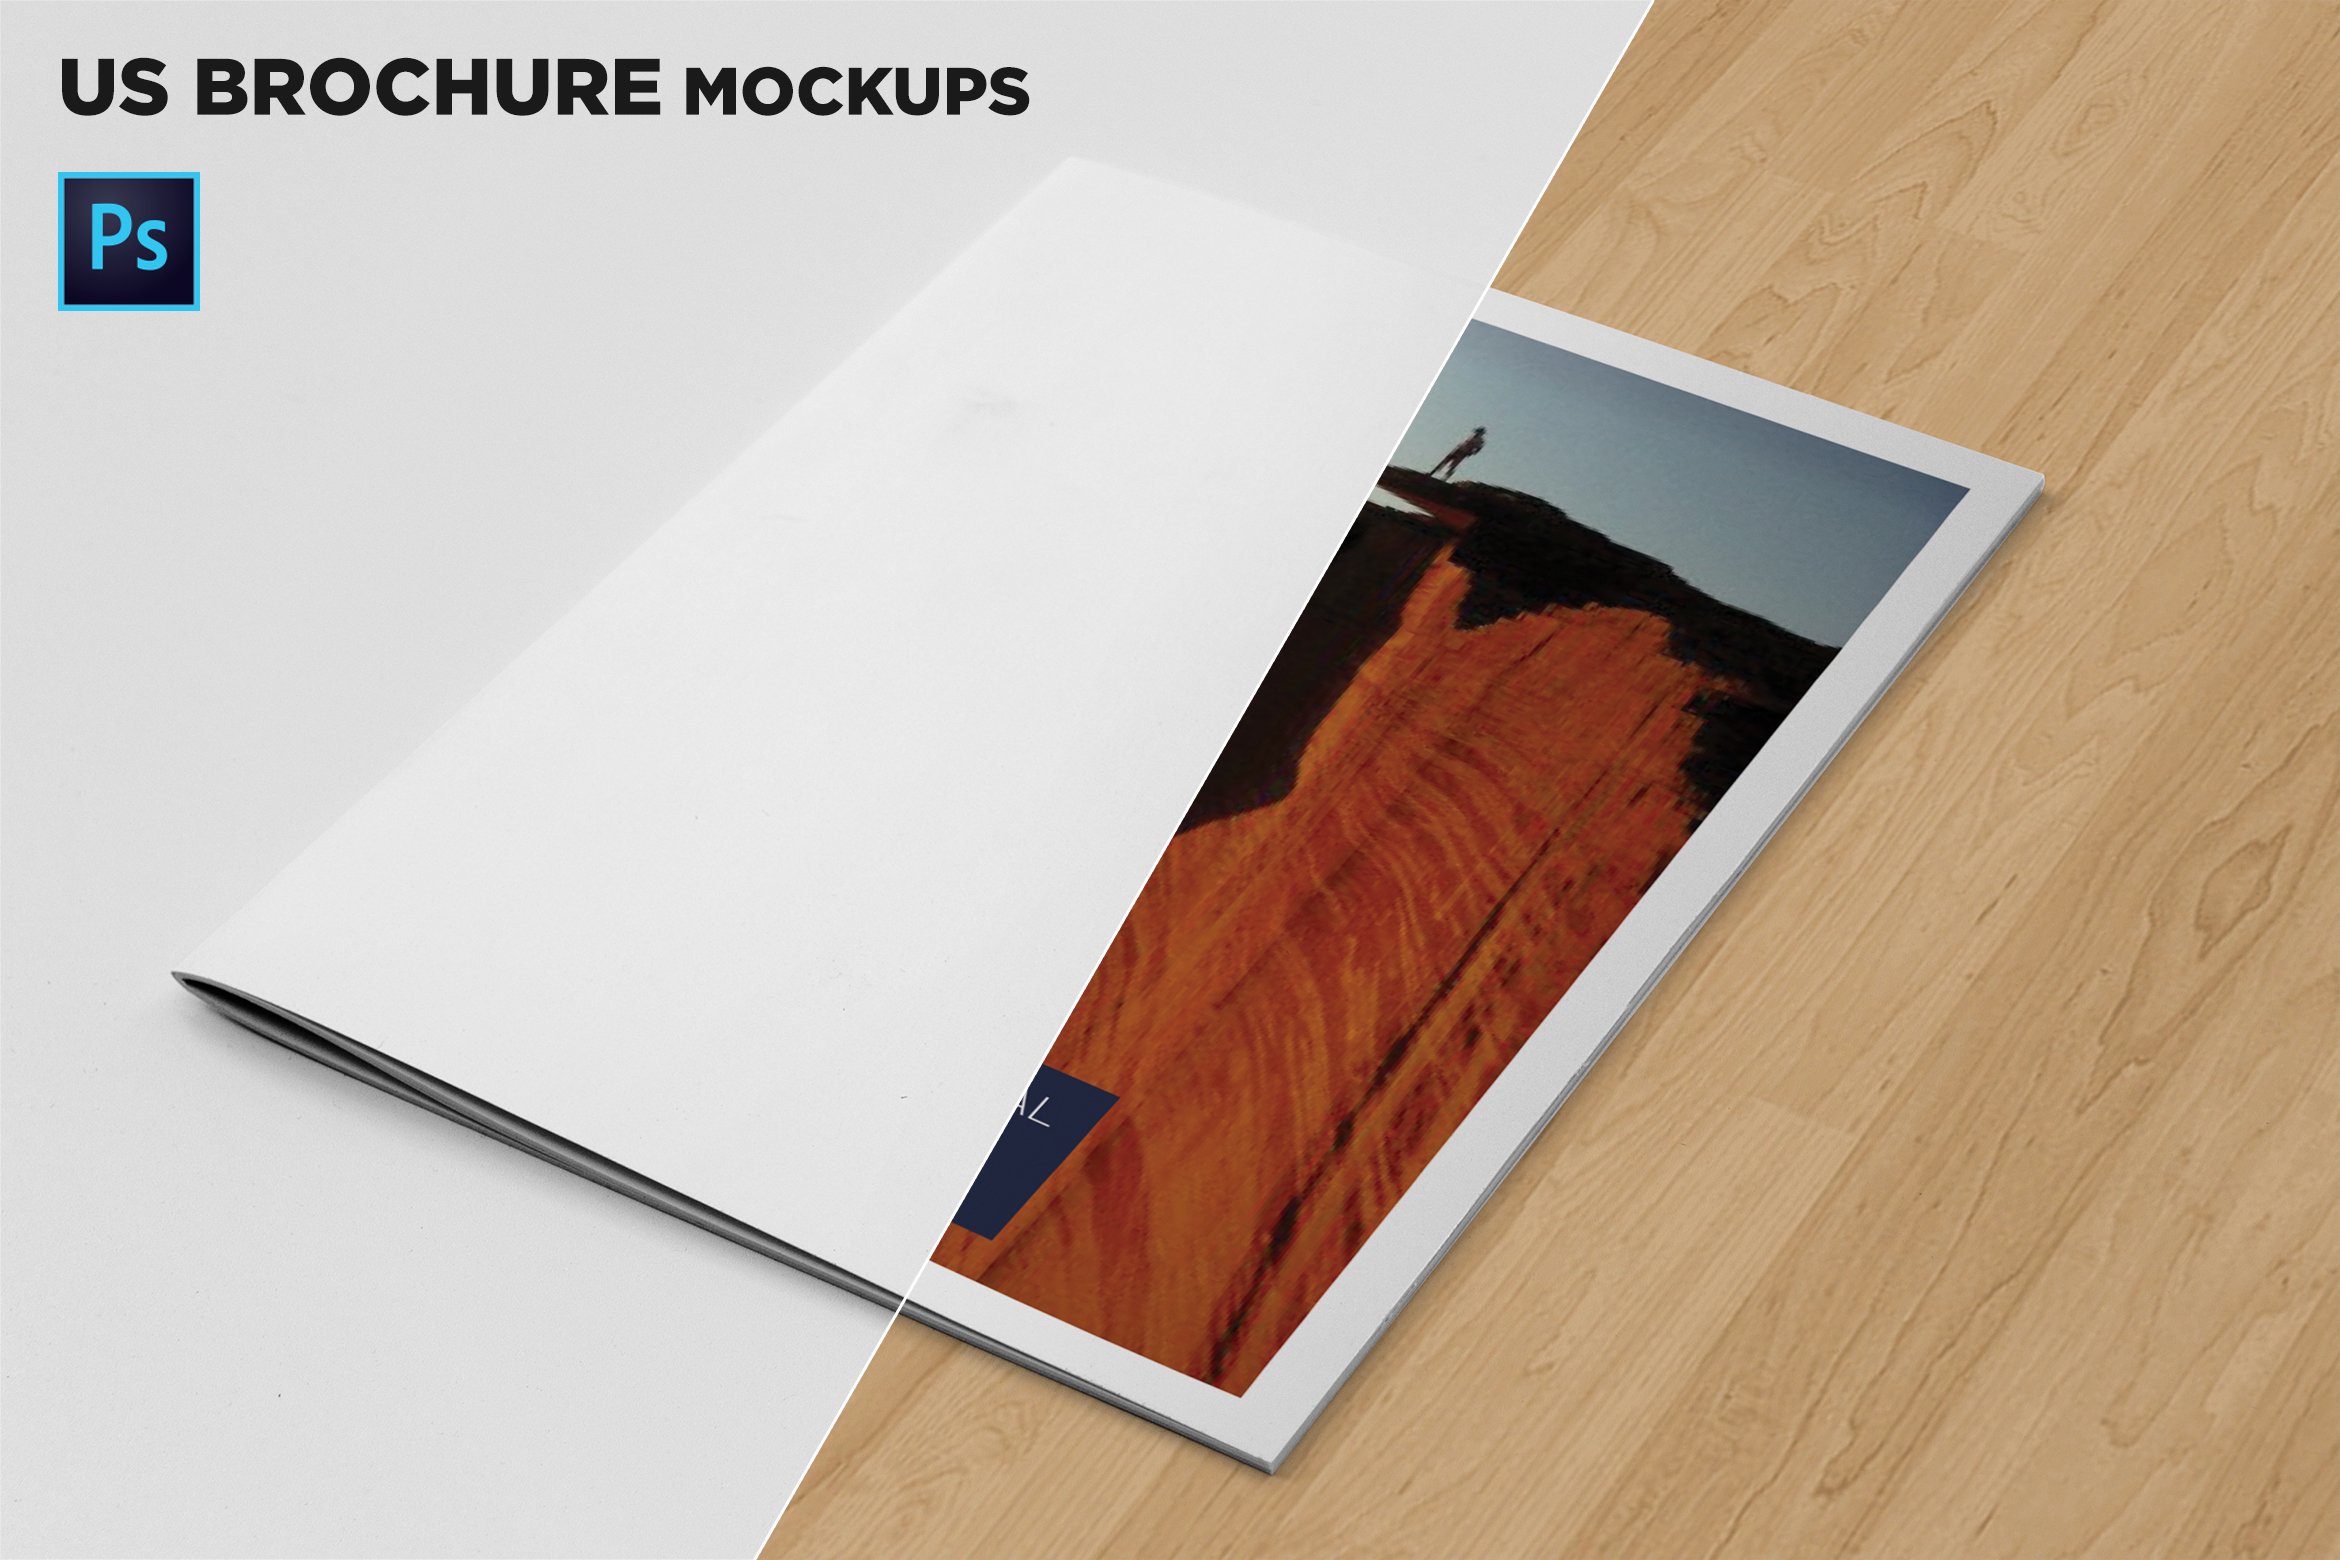 US Letter Brochure Mockups cover image.